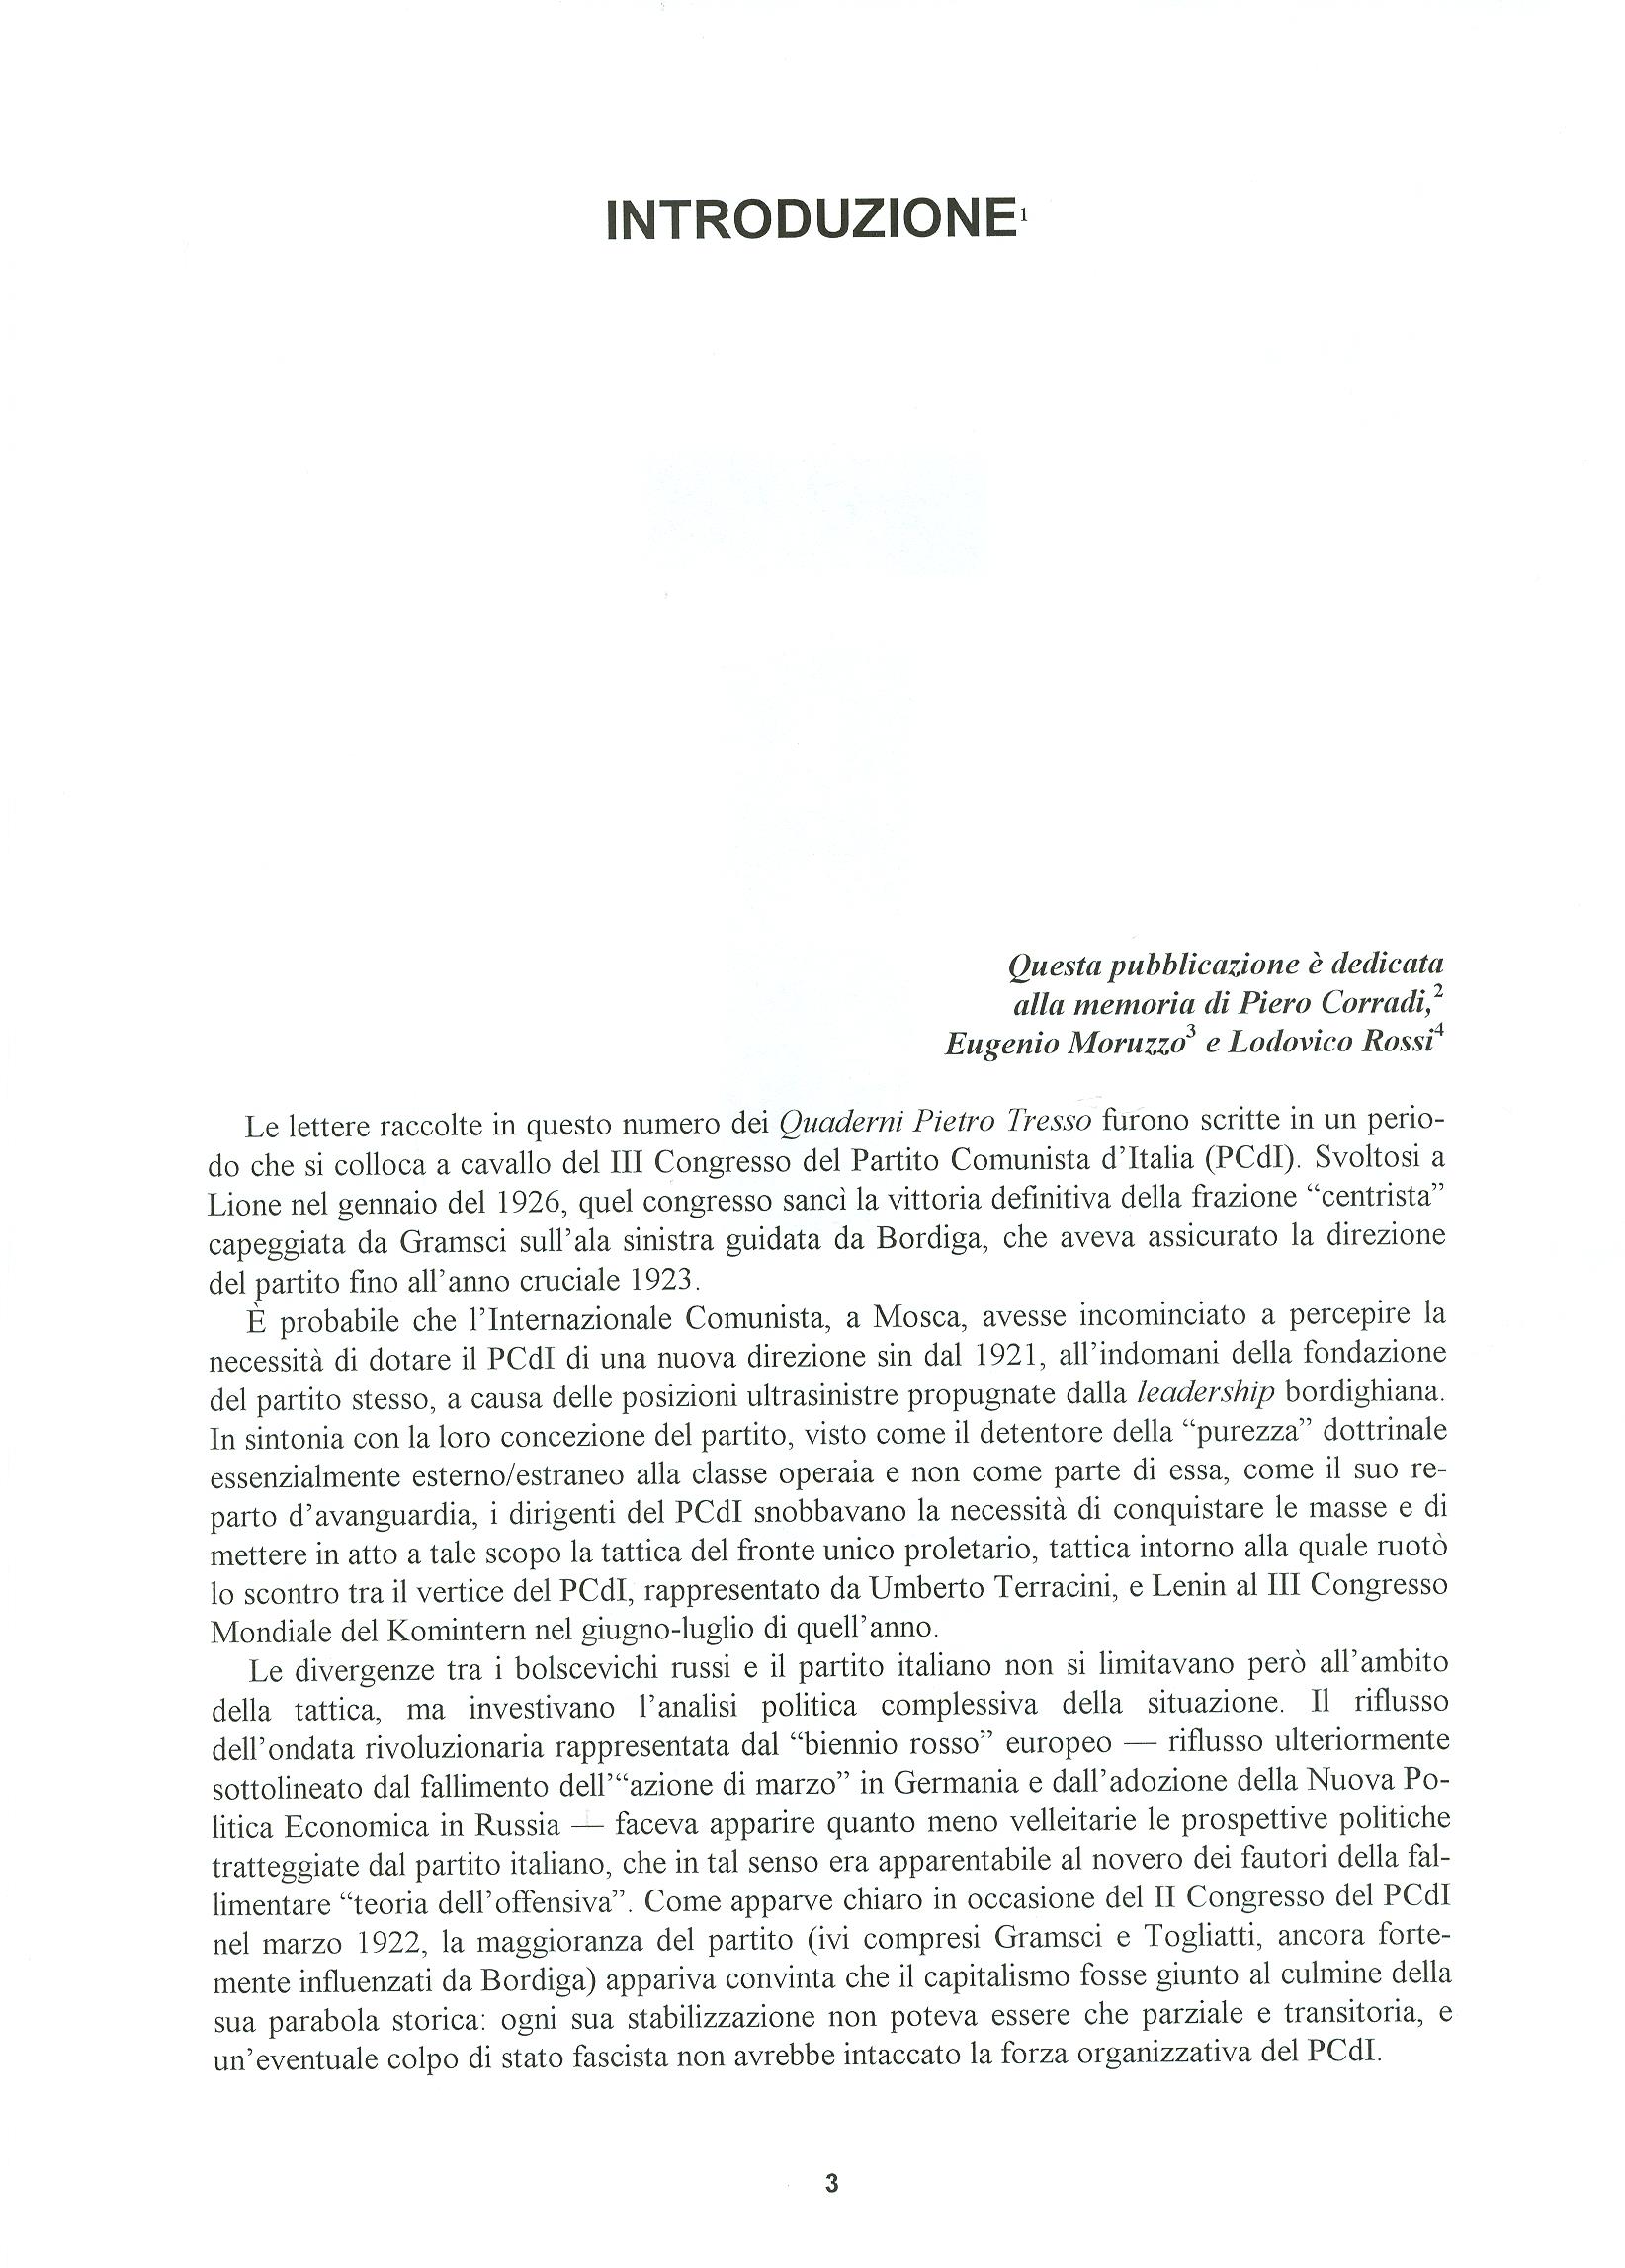 Quaderni del Centro Studi Pietro Tresso (1996-2009) n. 14 (novembre 1998) - pag. 4